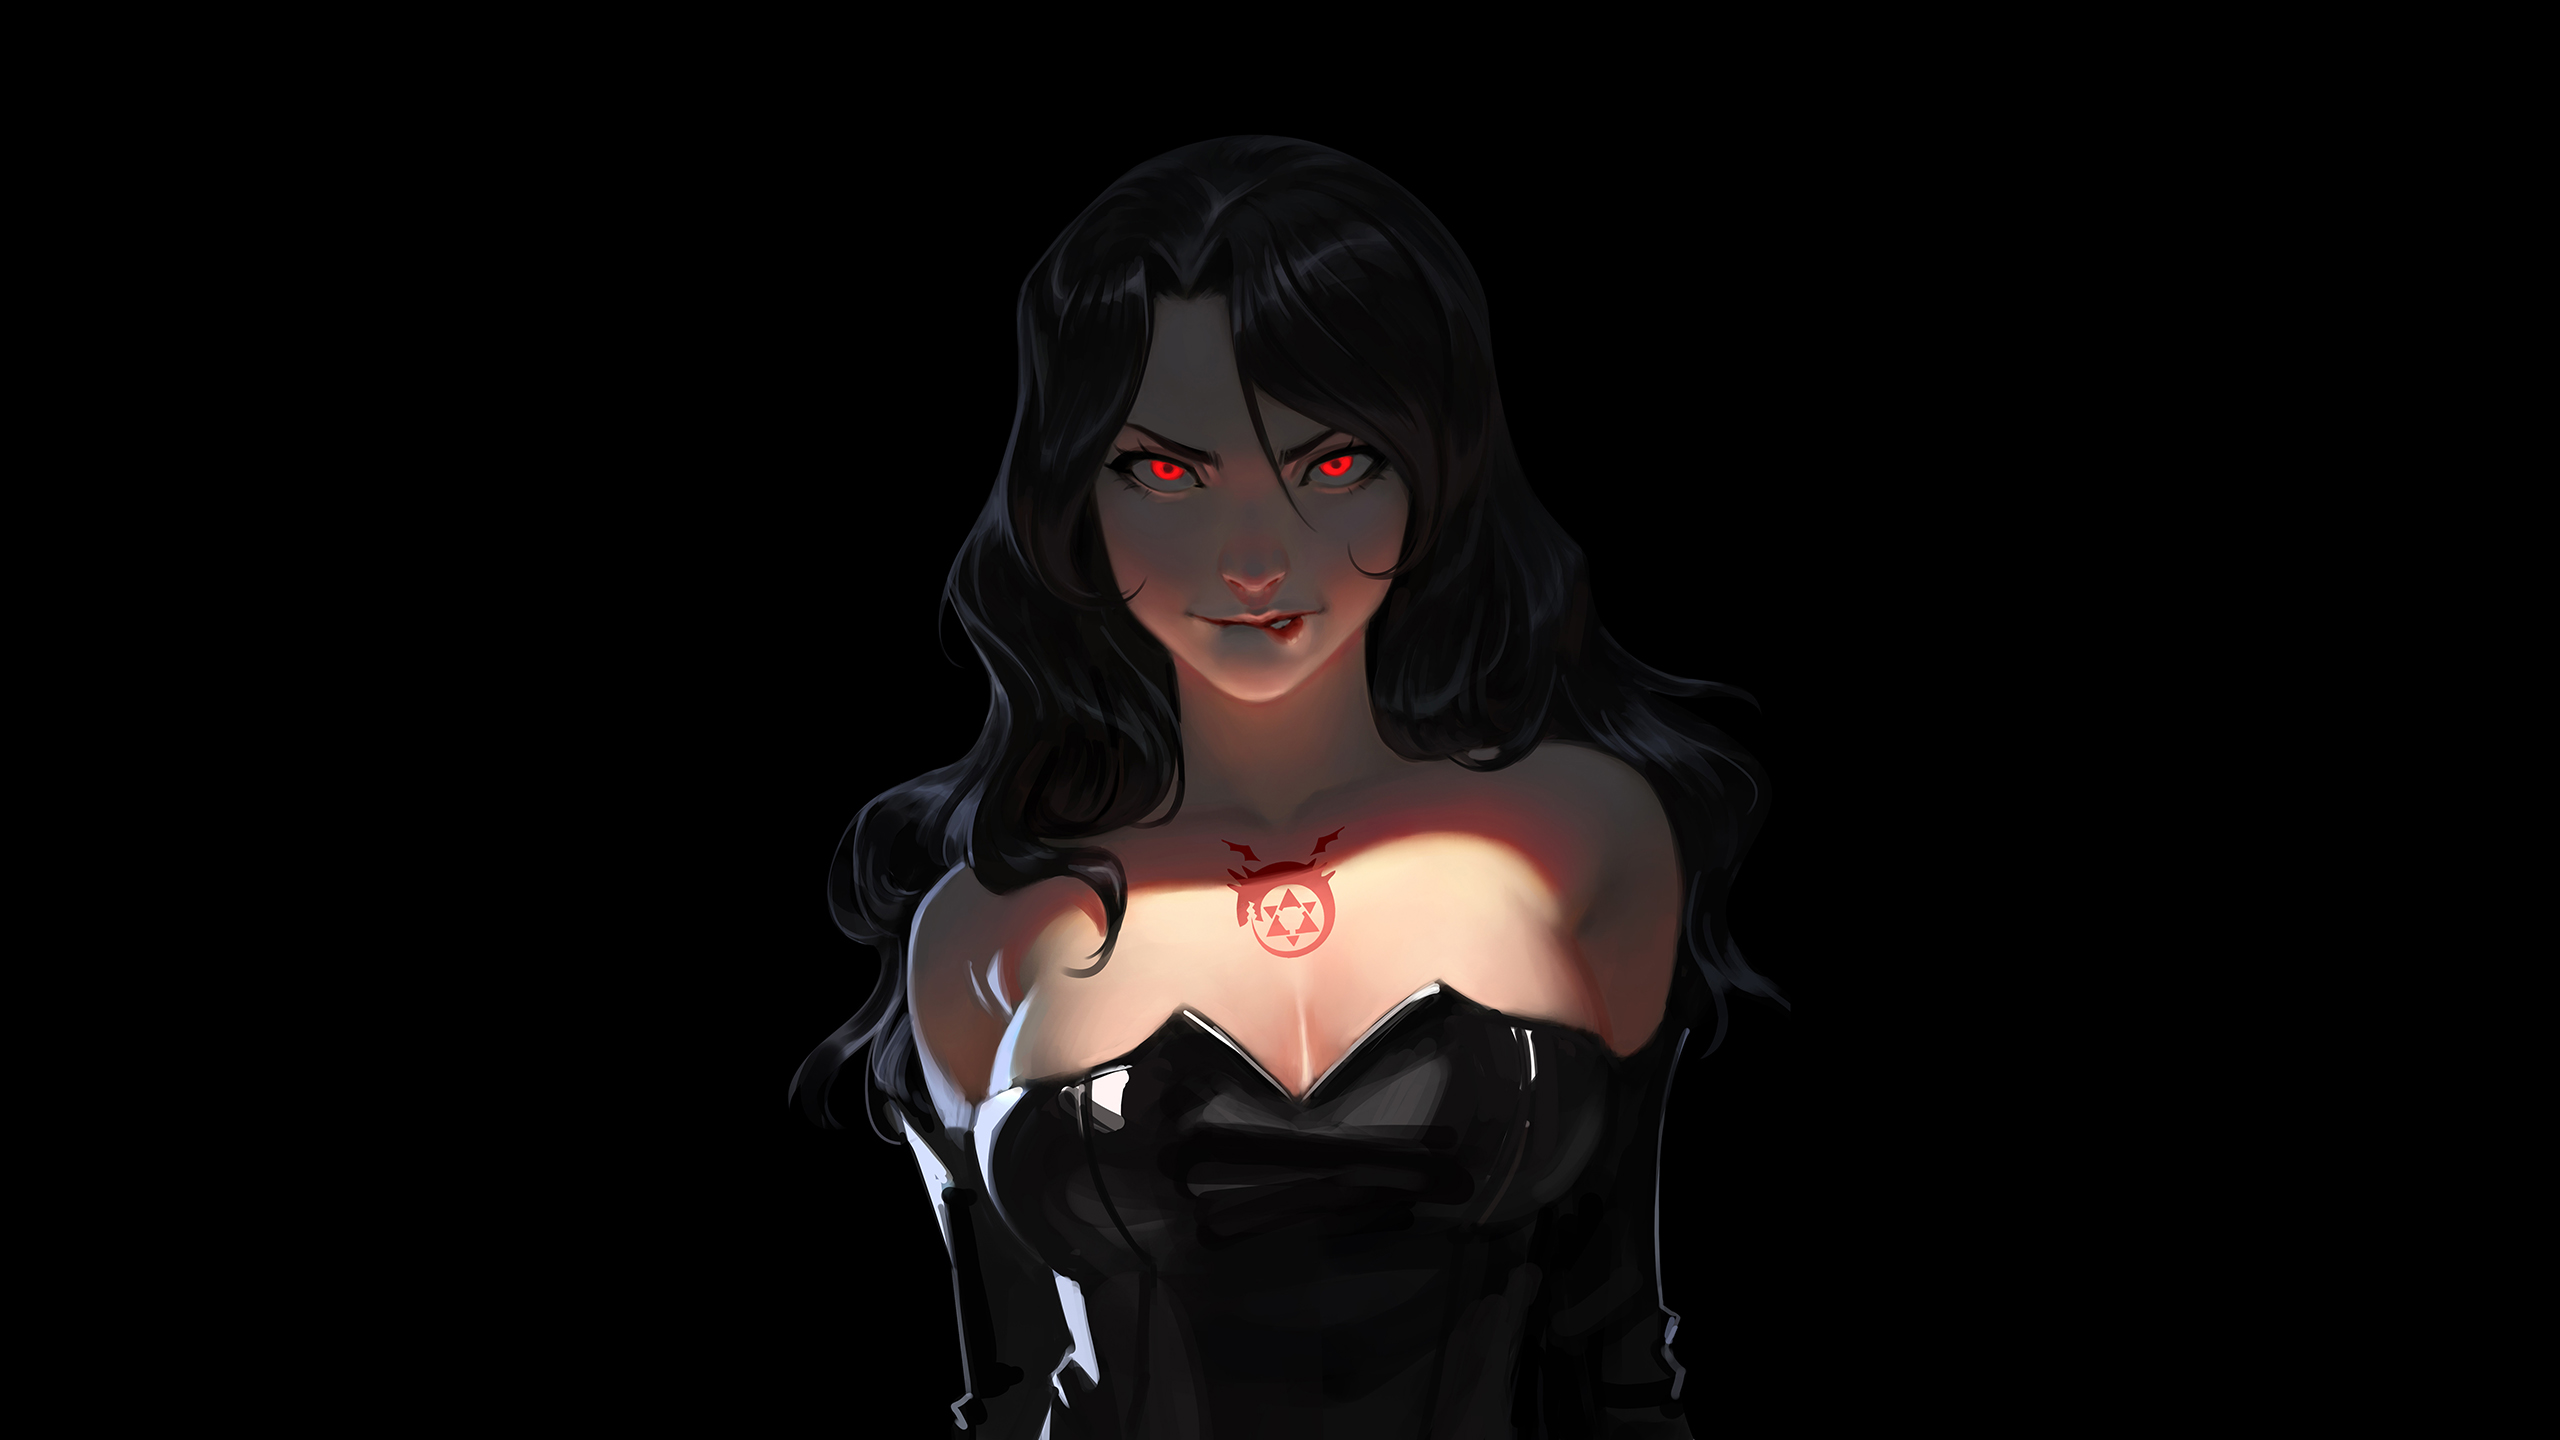 Lust Fullmetal Alchemist Full Metal Alchemist Anime Girls Black Hair Red Eyes Black Background Malve 2560x1440